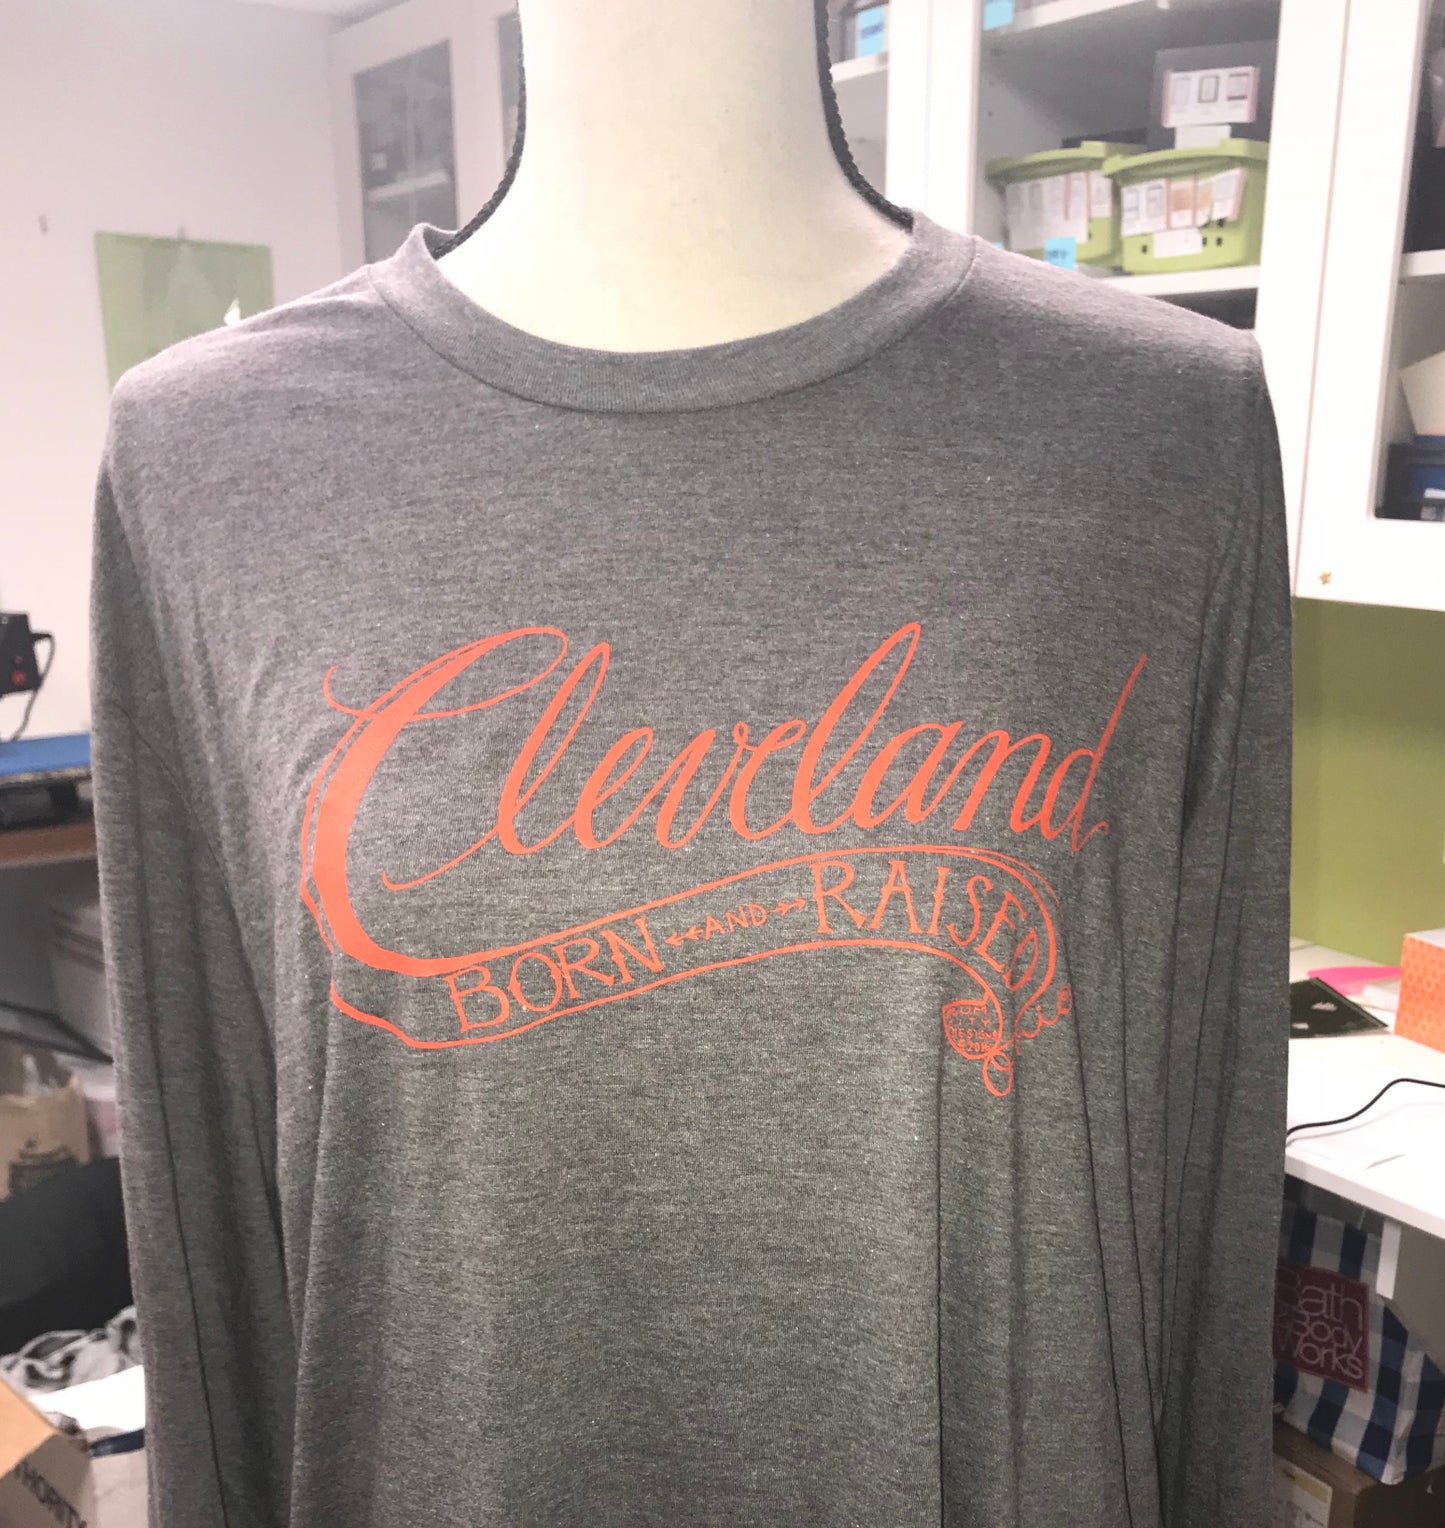 Cleveland Born & Raised Long-sleeved Shirt